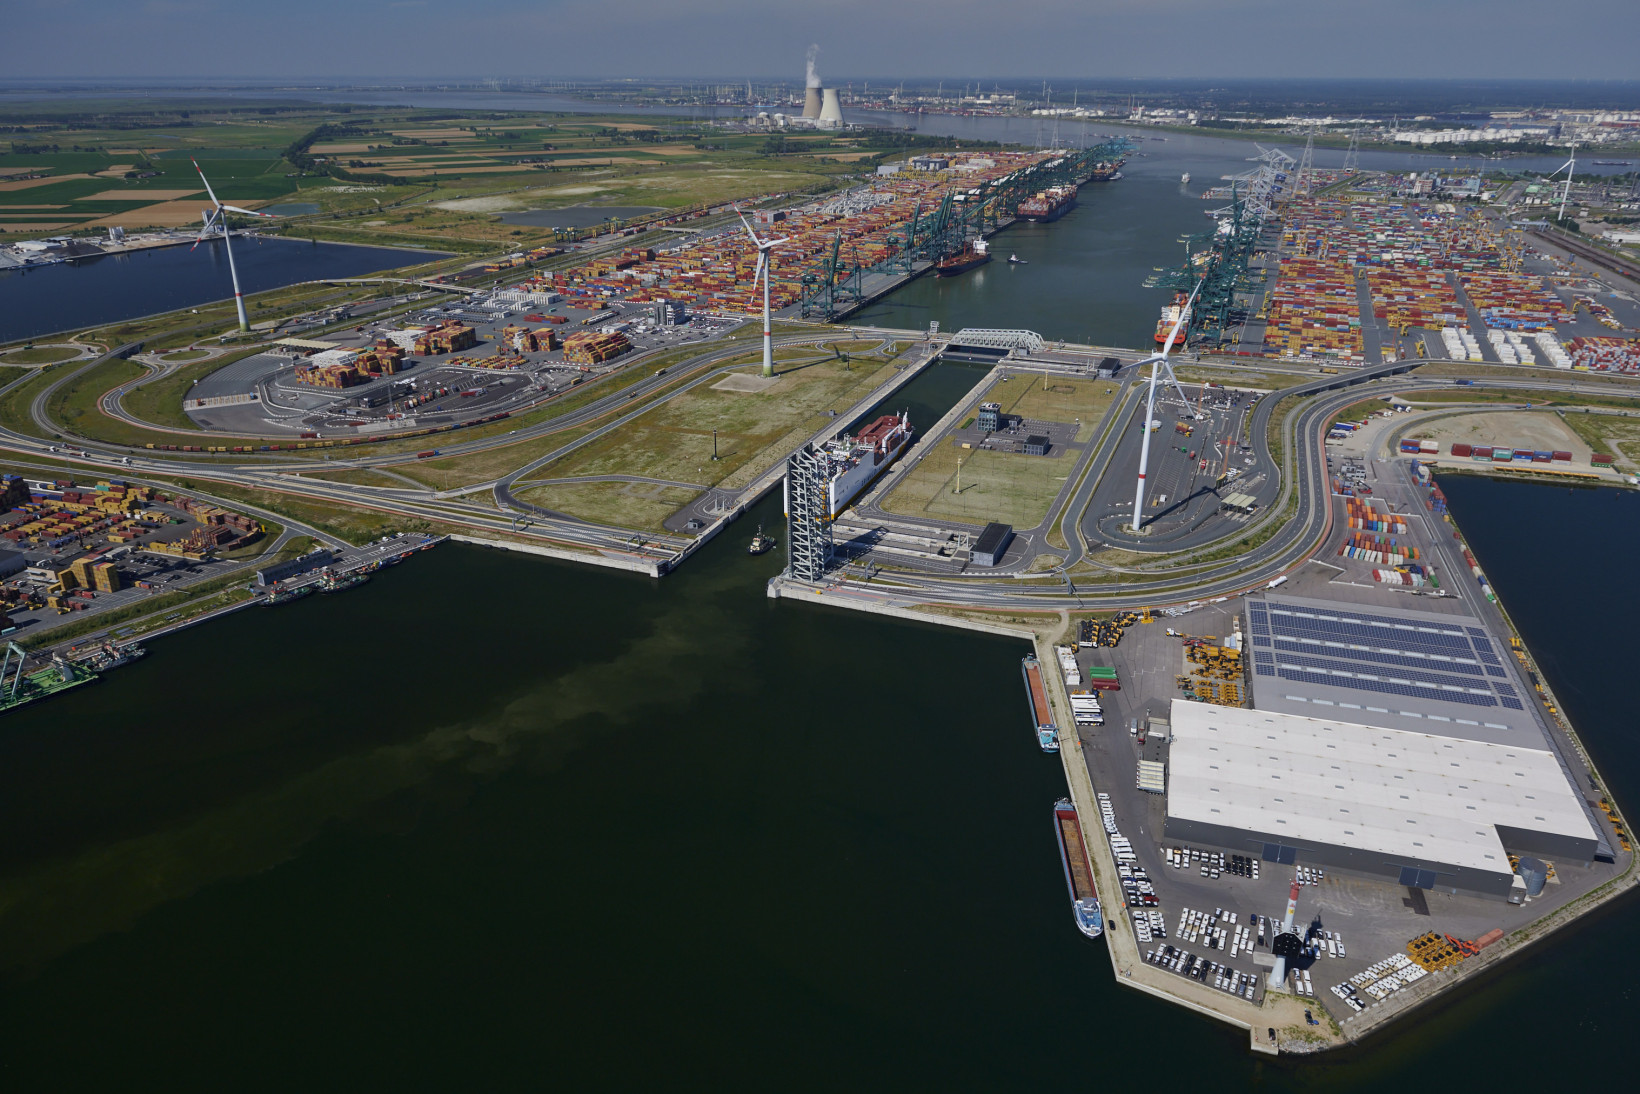 Aerial view Kieldrechtsluis & Deurganckdok (largest container terminals) Antwerp Credit Port of Antwerp-Bruges